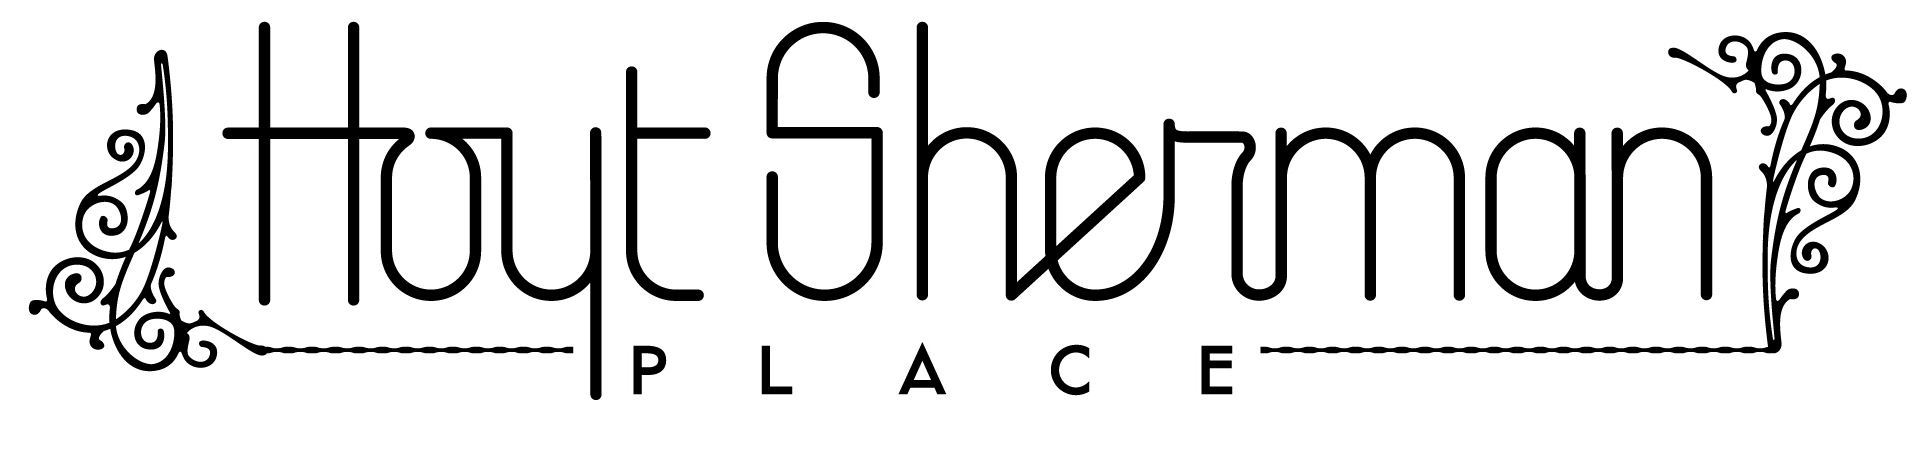 Hoyt Sherman Place Foundation logo